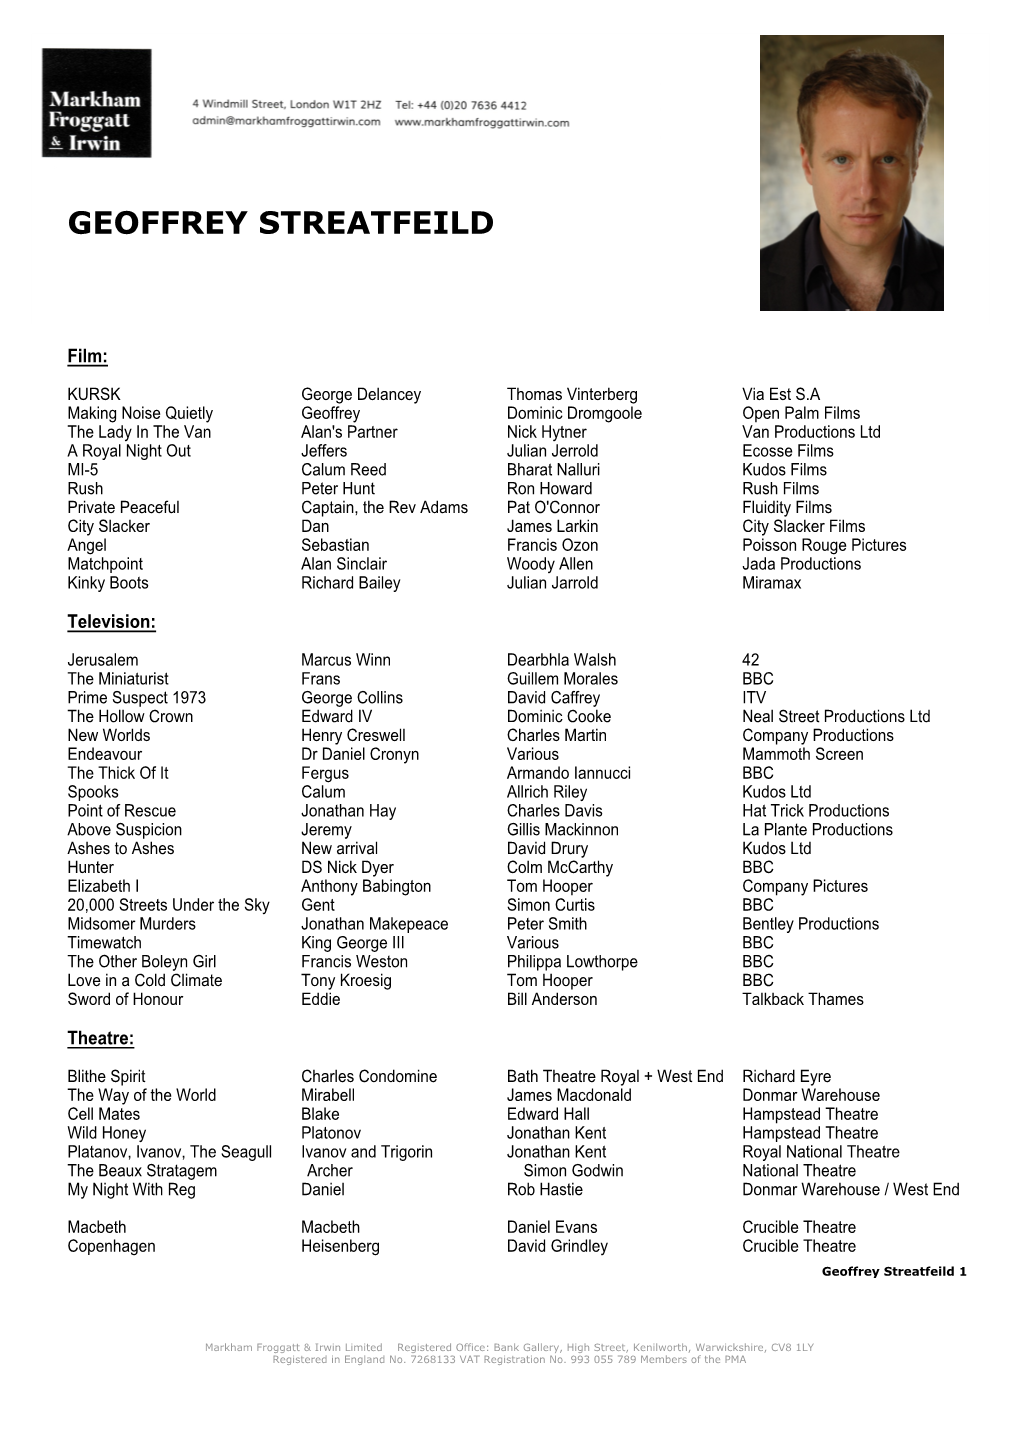 Geoffrey Streatfeild